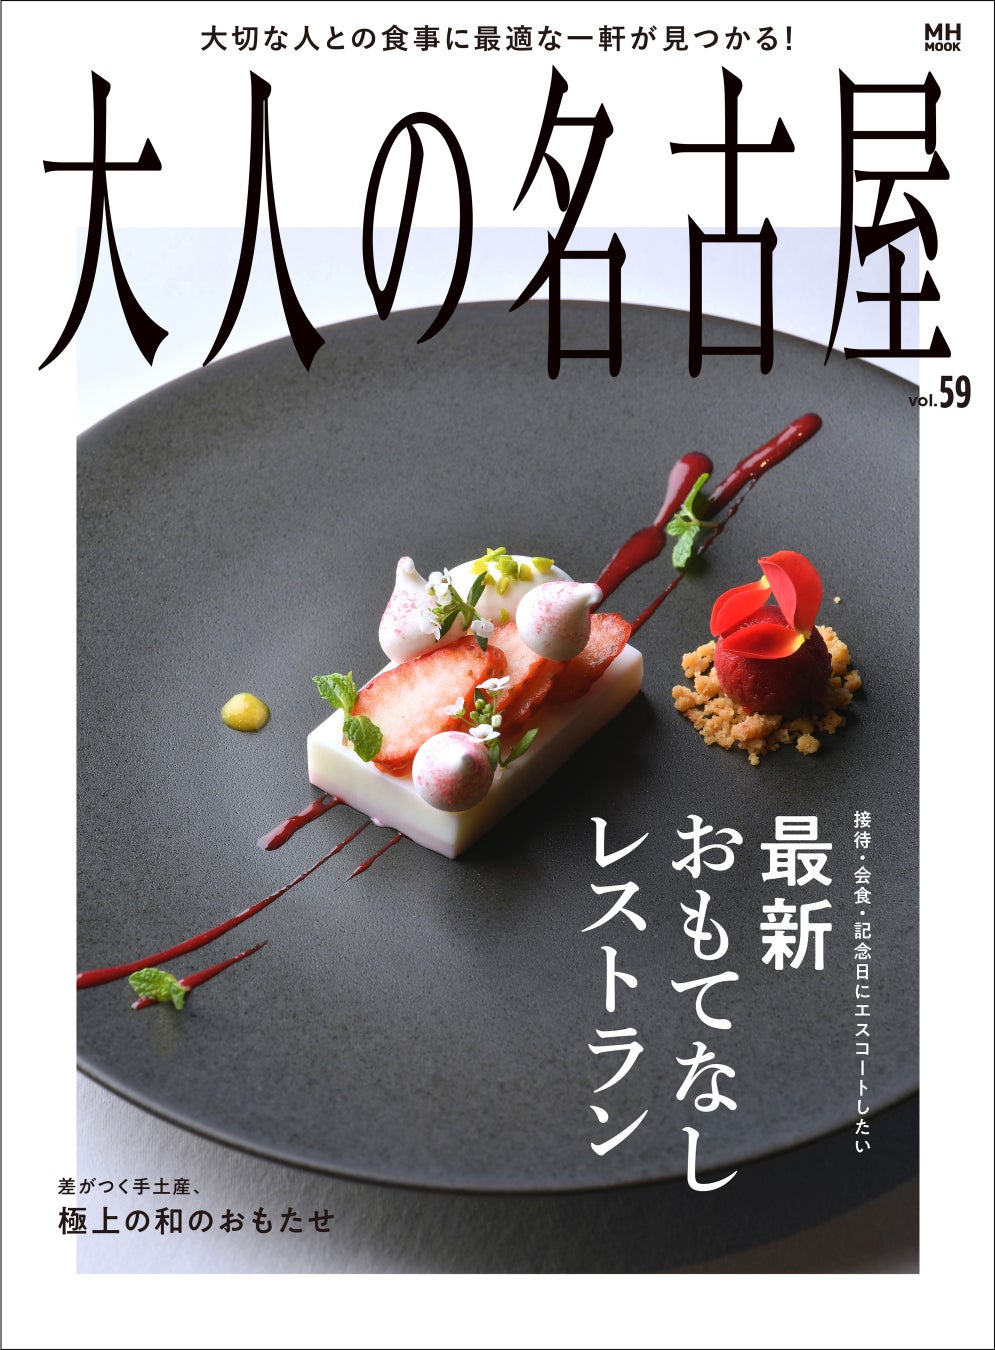 接待・会食・記念日にエスコートしたい「最新おもてなしレストラン」を大特集！ 『大人の名古屋 Vol.59』は好評発売中。